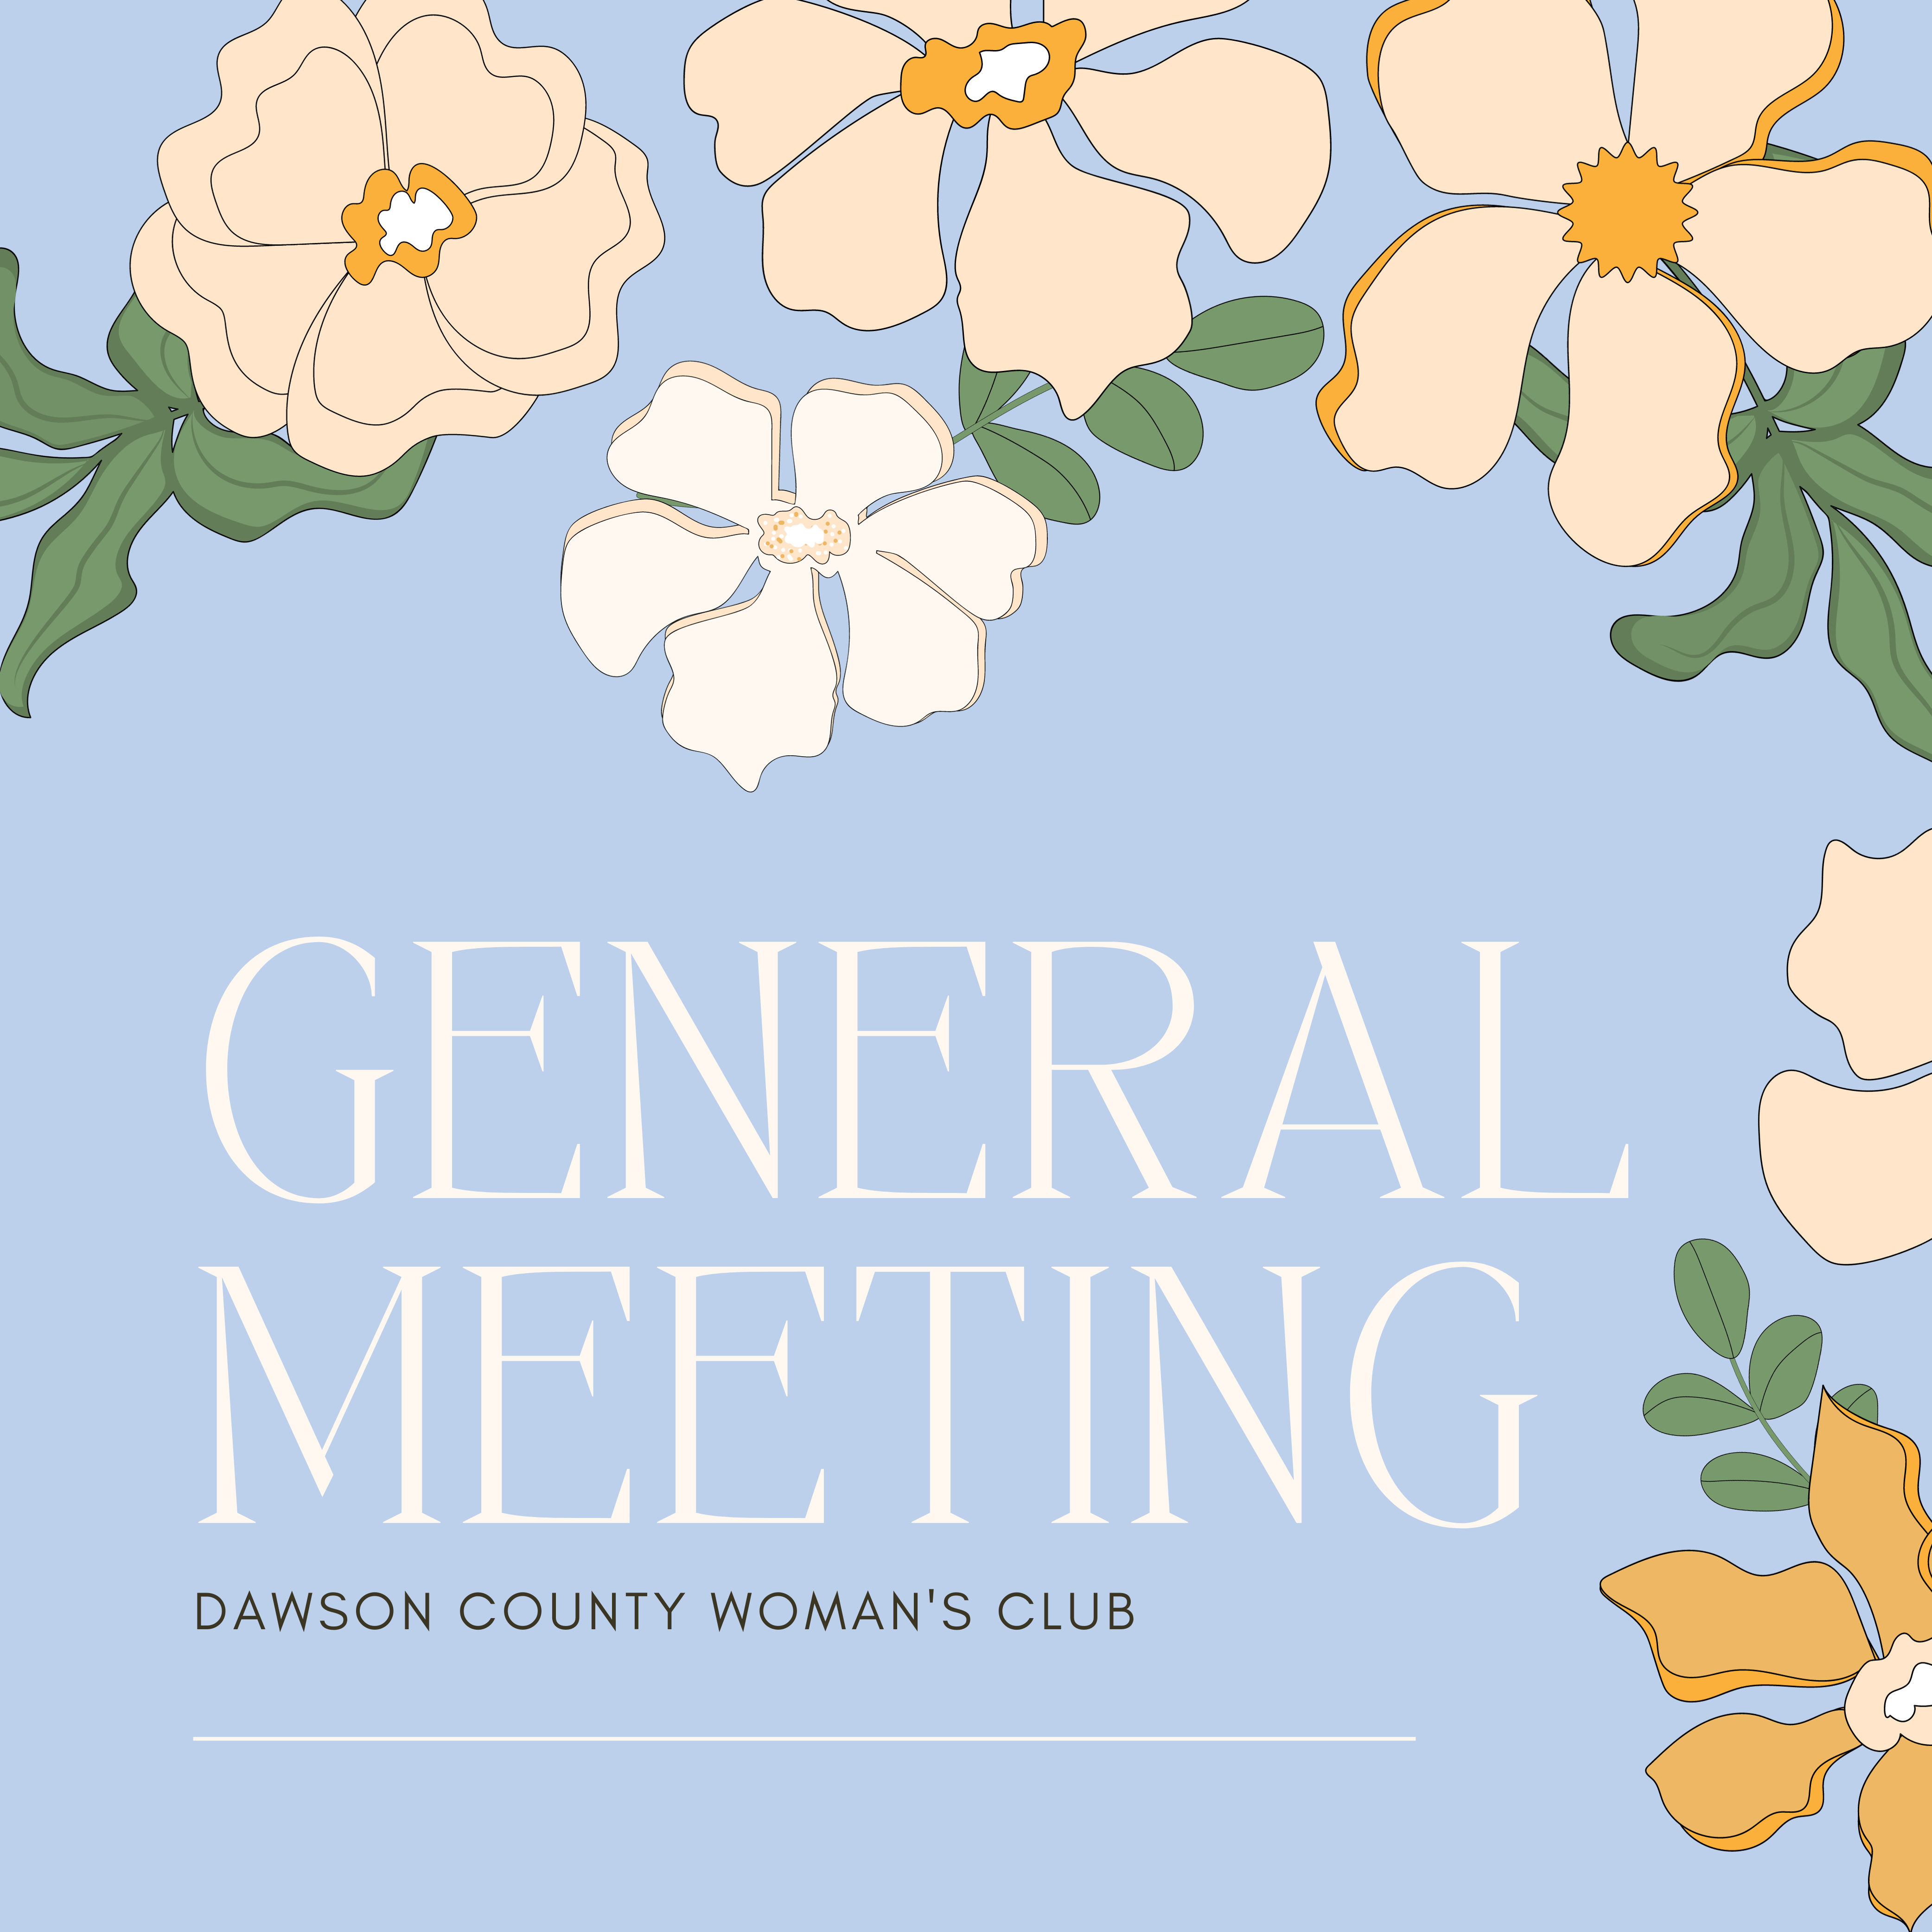 April General Meeting